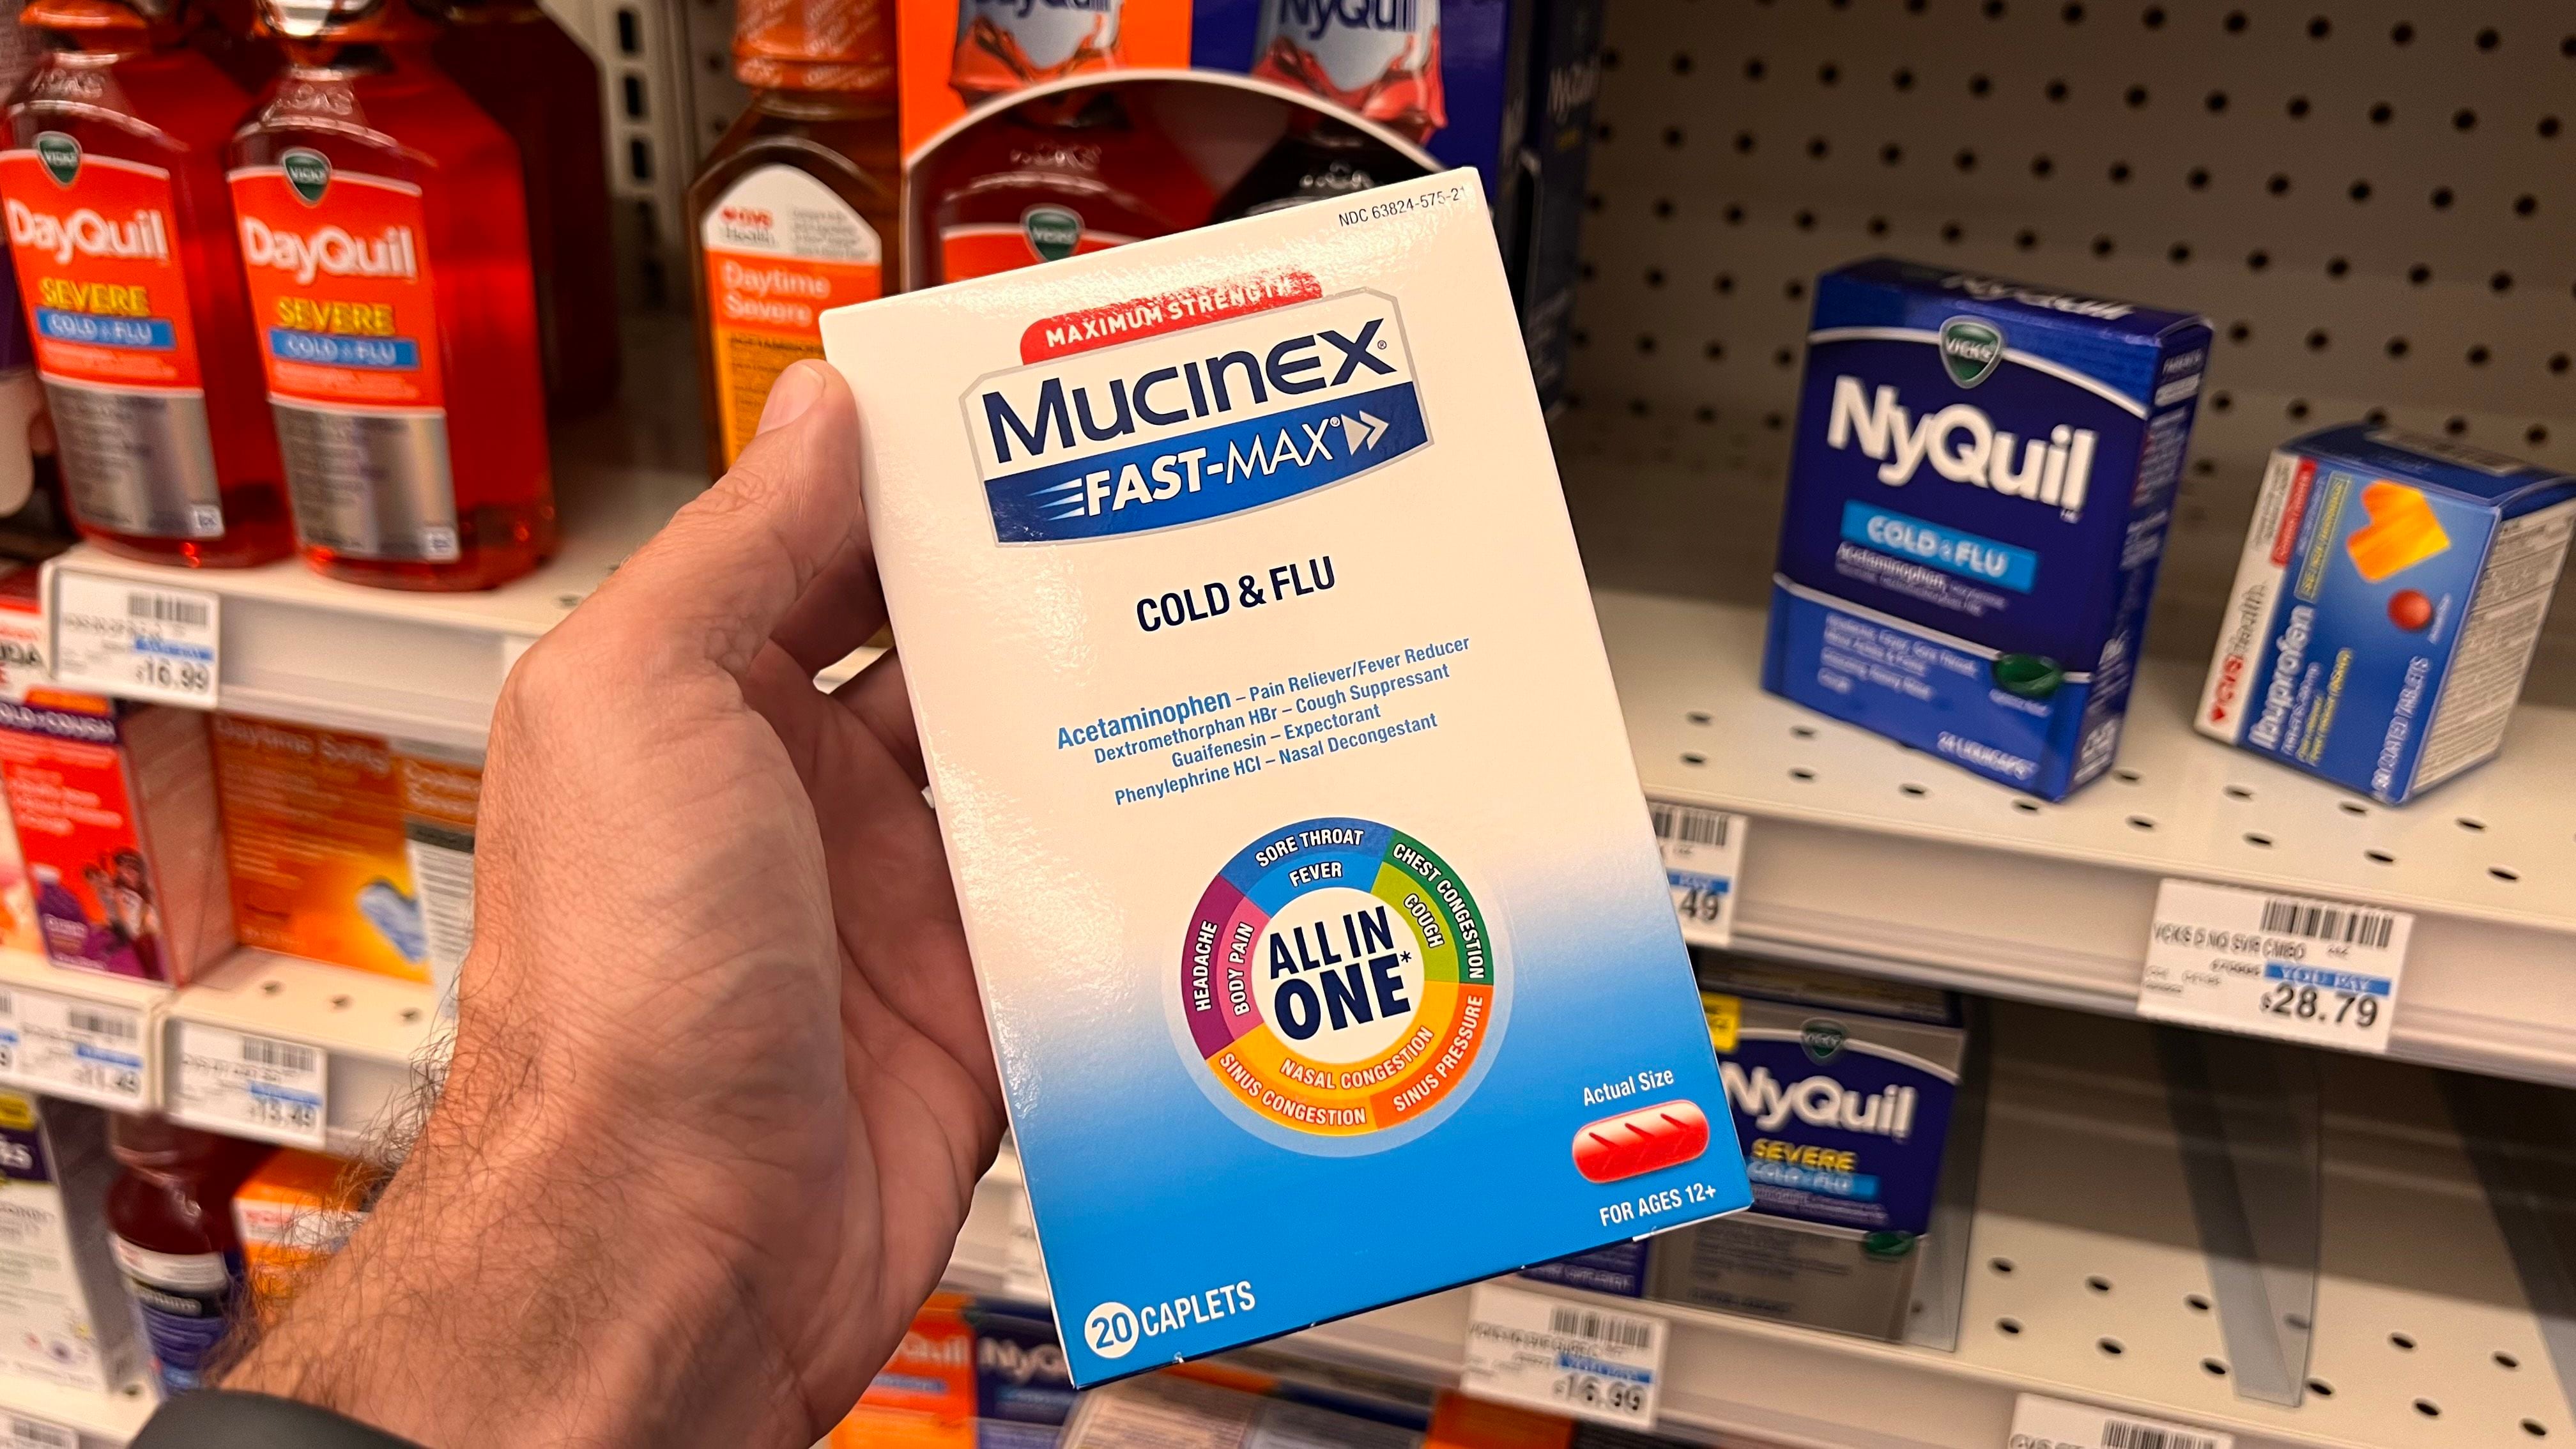 Las tabletas que millones confían para aliviar síntomas de gripe y alergias podrían no ser más efectivas que un placebo, según recientes hallazgos (Opy Morales)